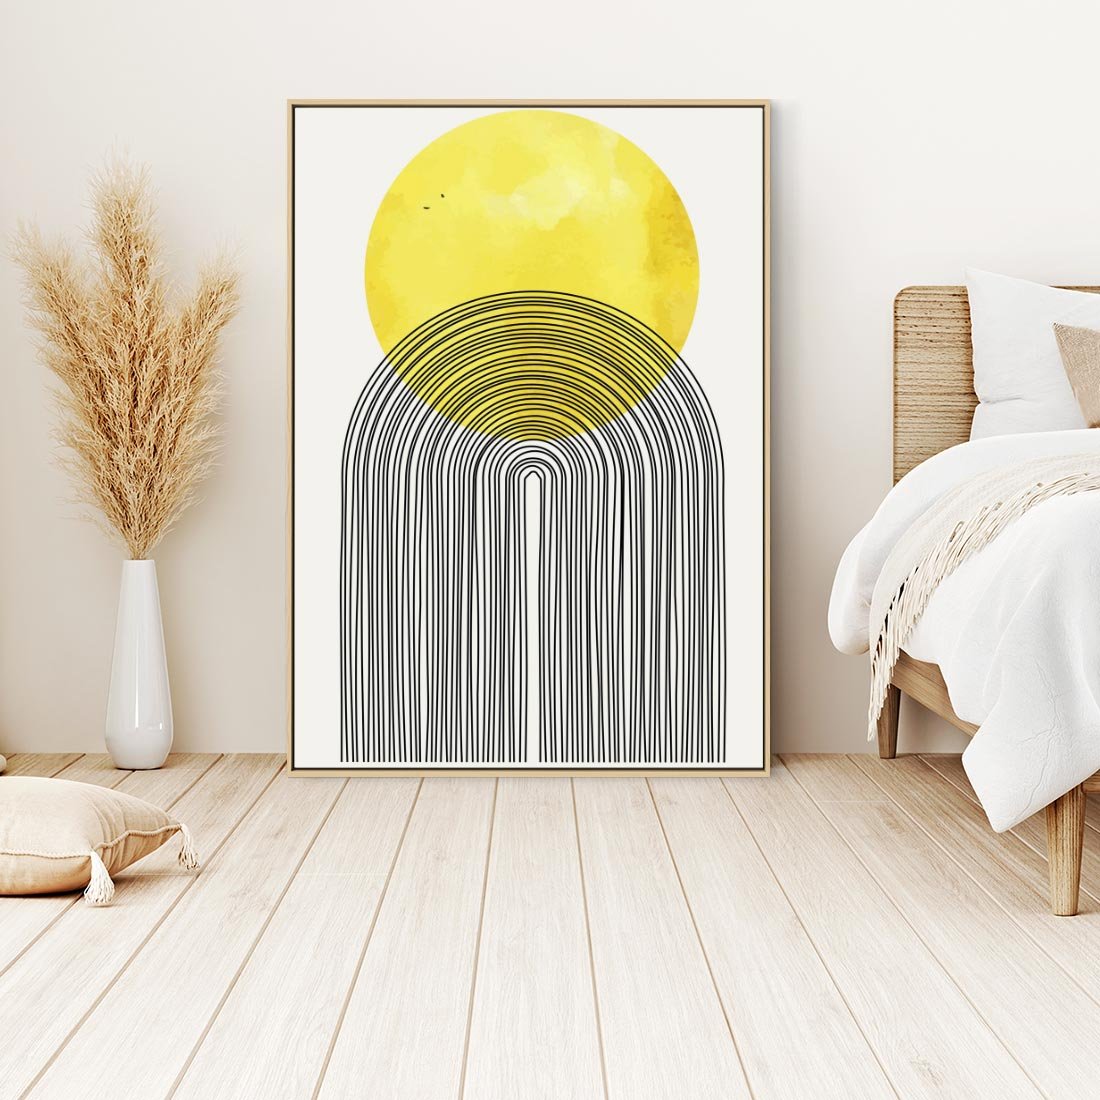 Obraz w ramie 50x70 - Słoneczne Odbicia - geometria, żółte koło - rama drewno